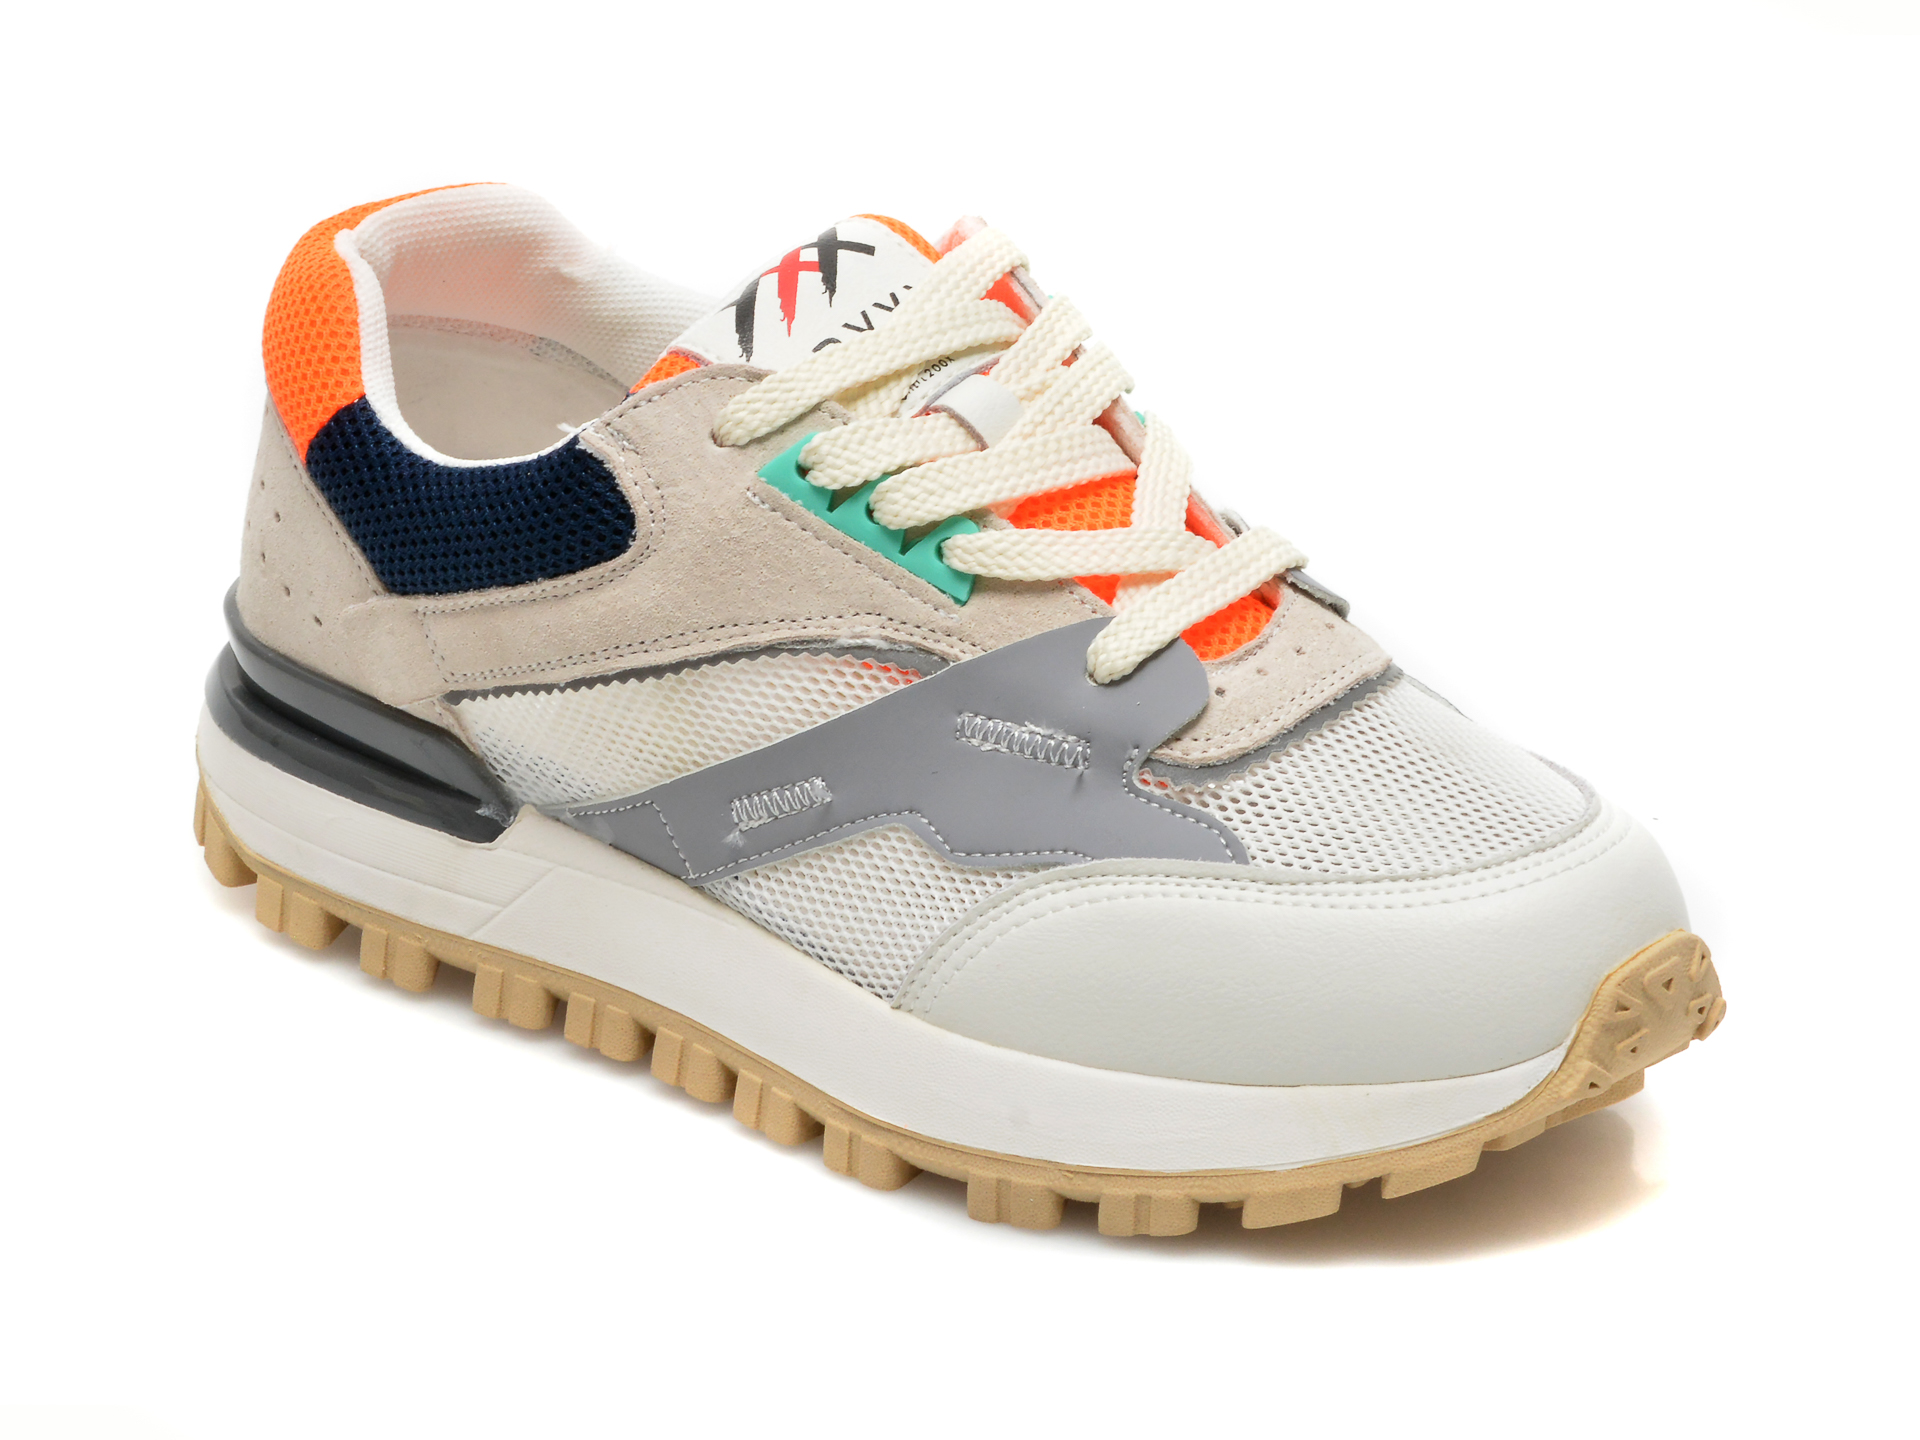 Pantofi sport GRYXX multicolori, 21112, din material textil si piele intoarsa /femei/pantofi